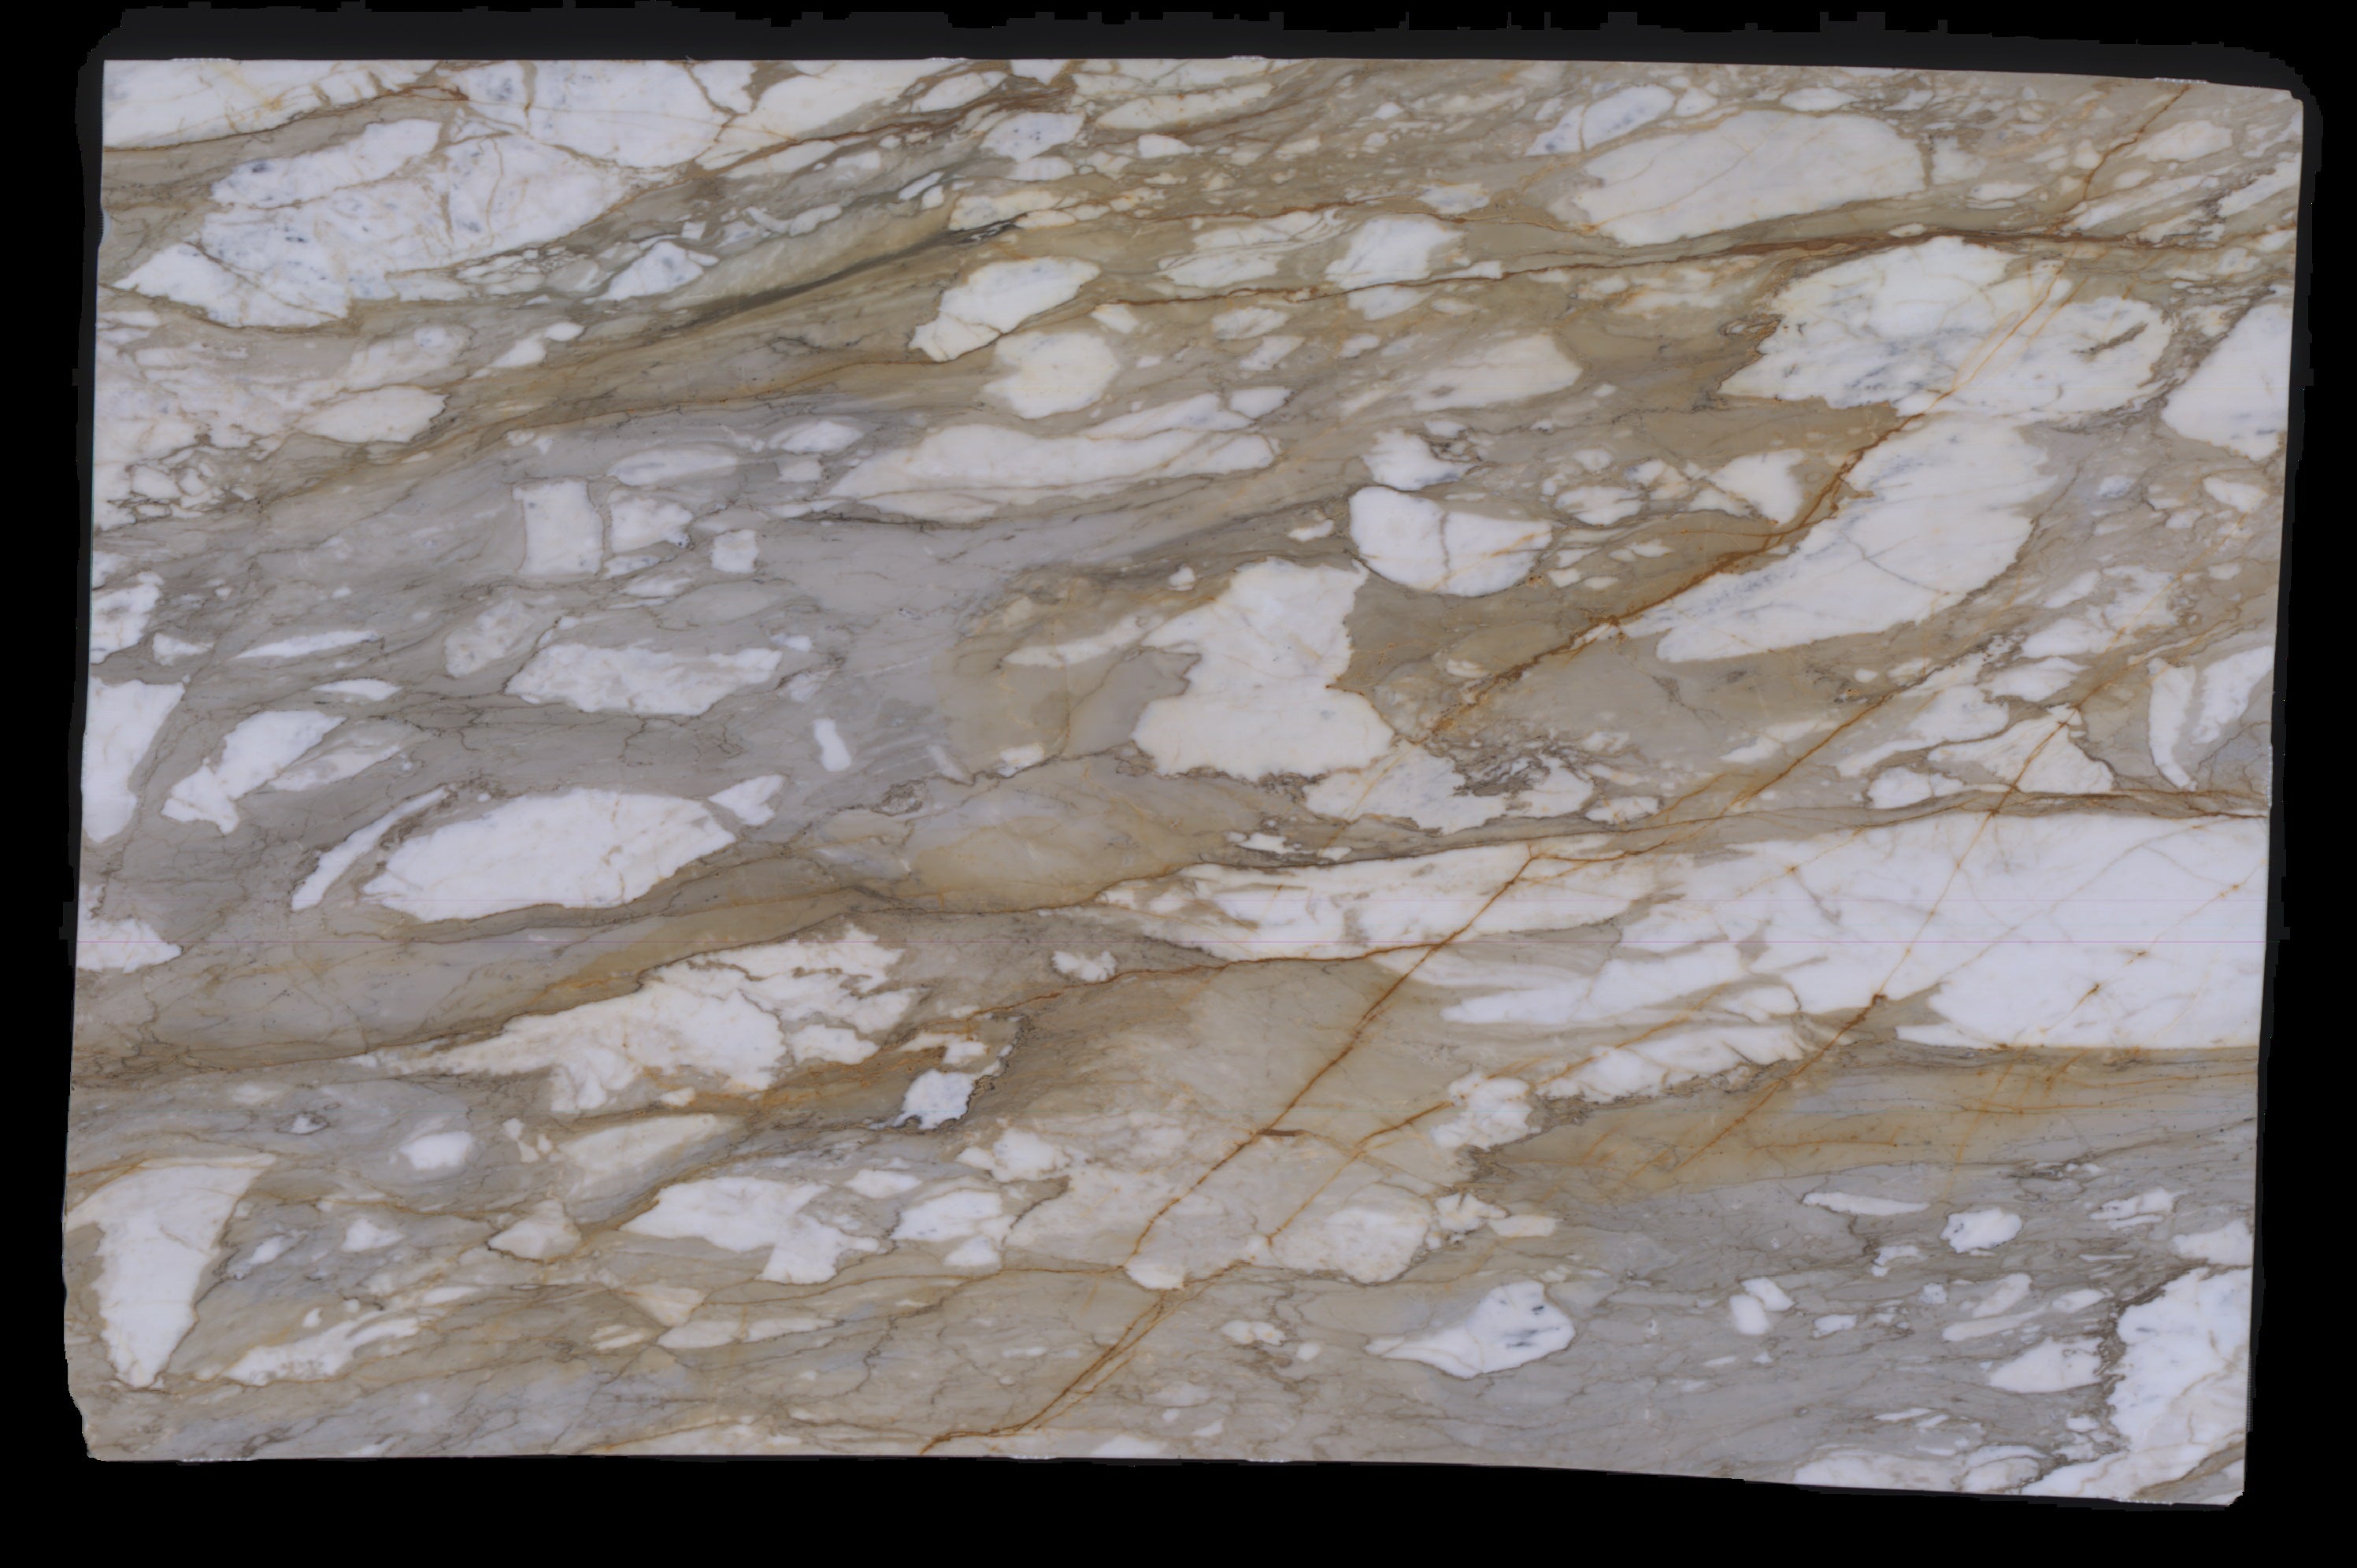  Calacatta Macchia Vecchia Marble Slab 3/4 - 953#46 -  VS 71x112 